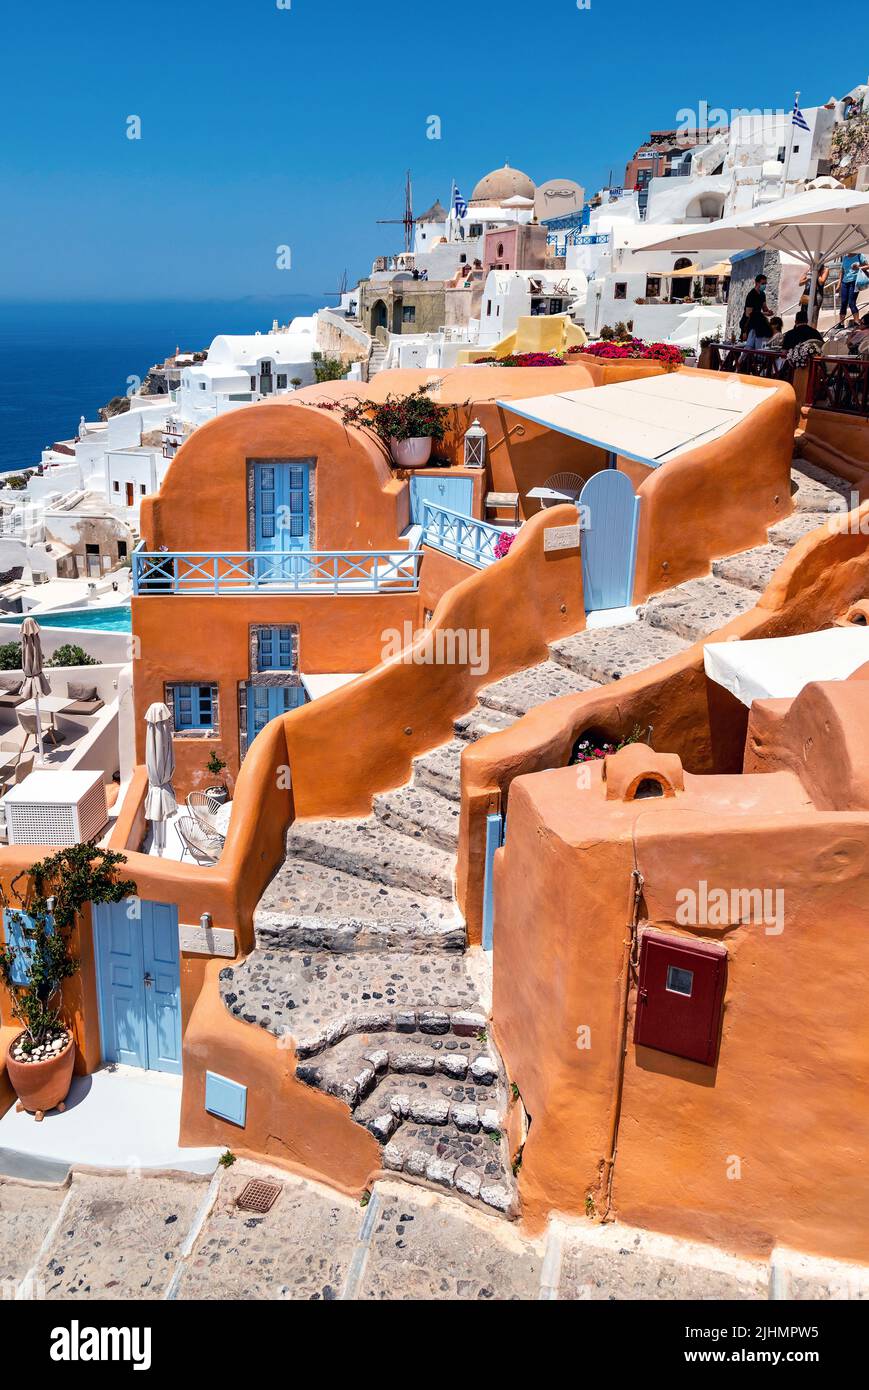 Picturesque, colorful 'corner' in Oia village, Santorini island, Cyclades, Aegean Sea, Greece. Stock Photo